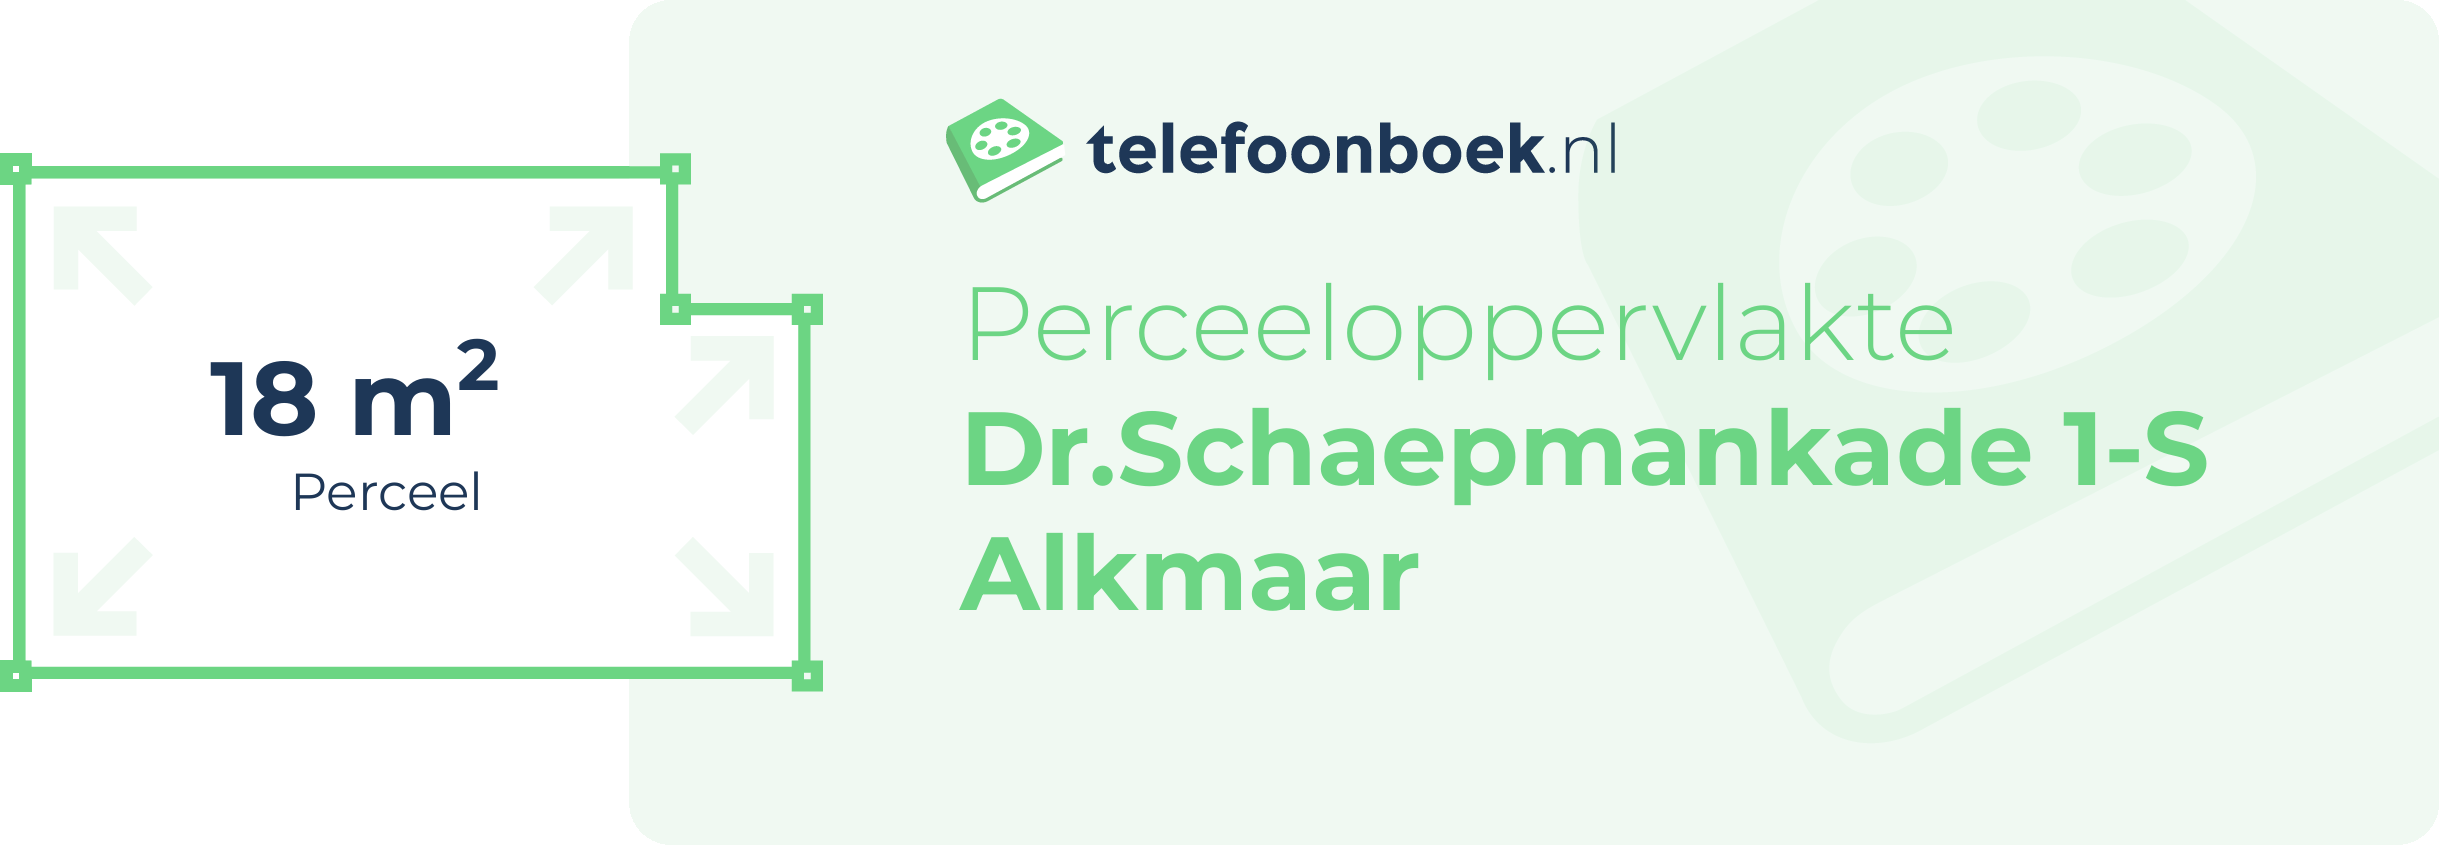 Perceeloppervlakte Dr.Schaepmankade 1-S Alkmaar